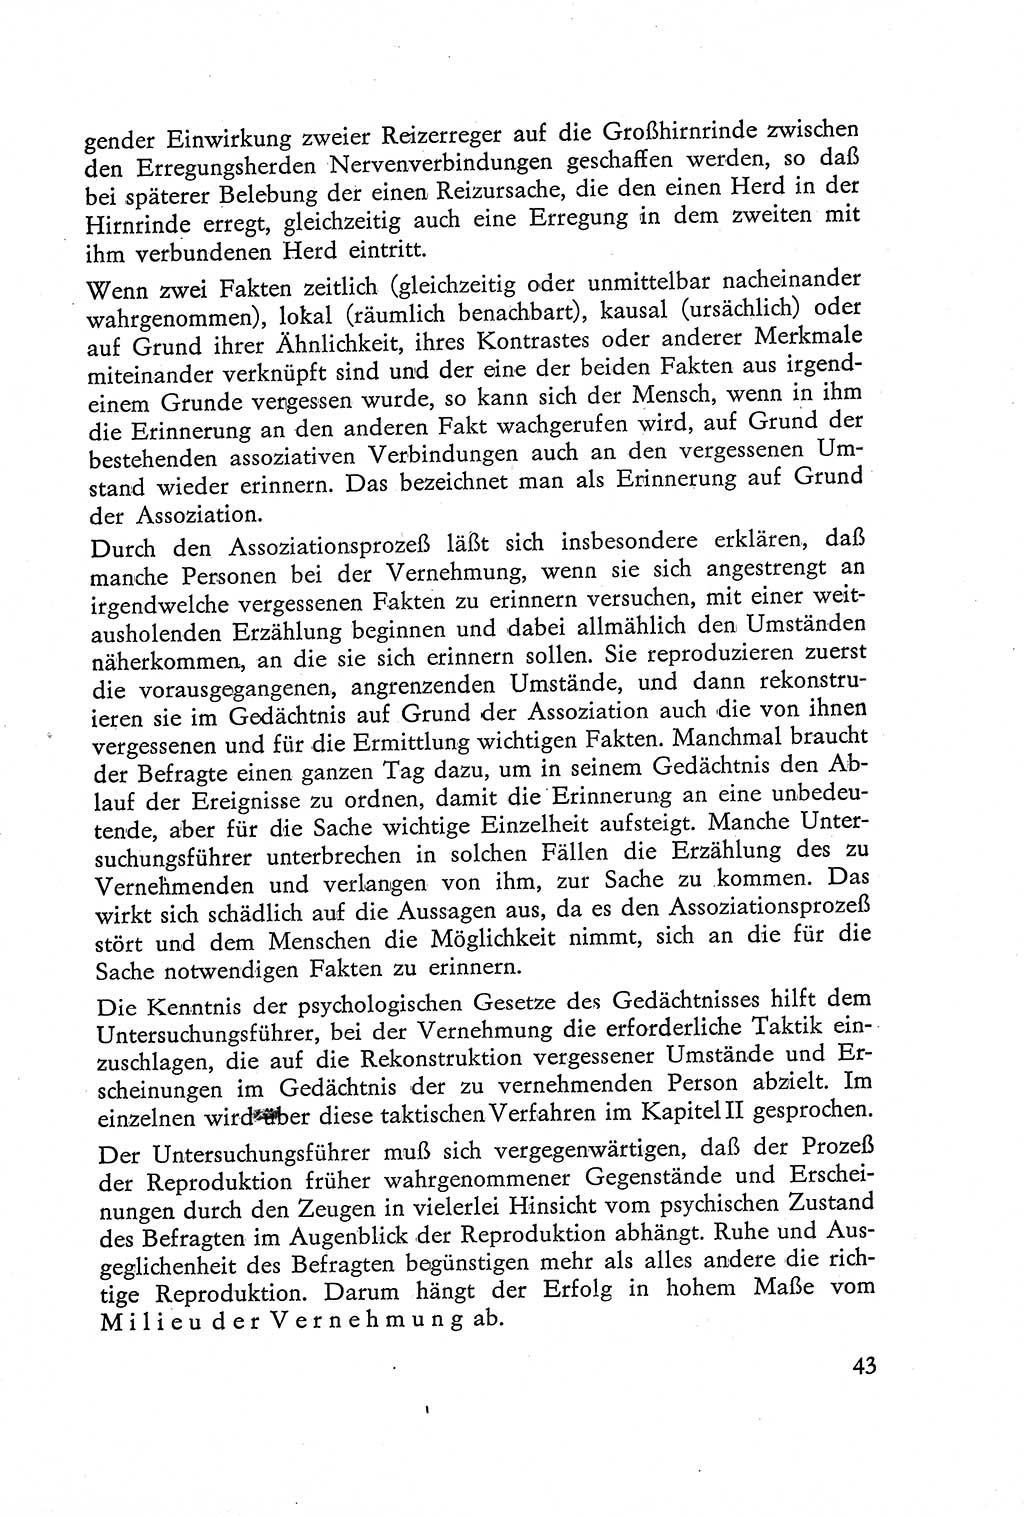 Die Vernehmung [Deutsche Demokratische Republik (DDR)] 1960, Seite 43 (Vern. DDR 1960, S. 43)